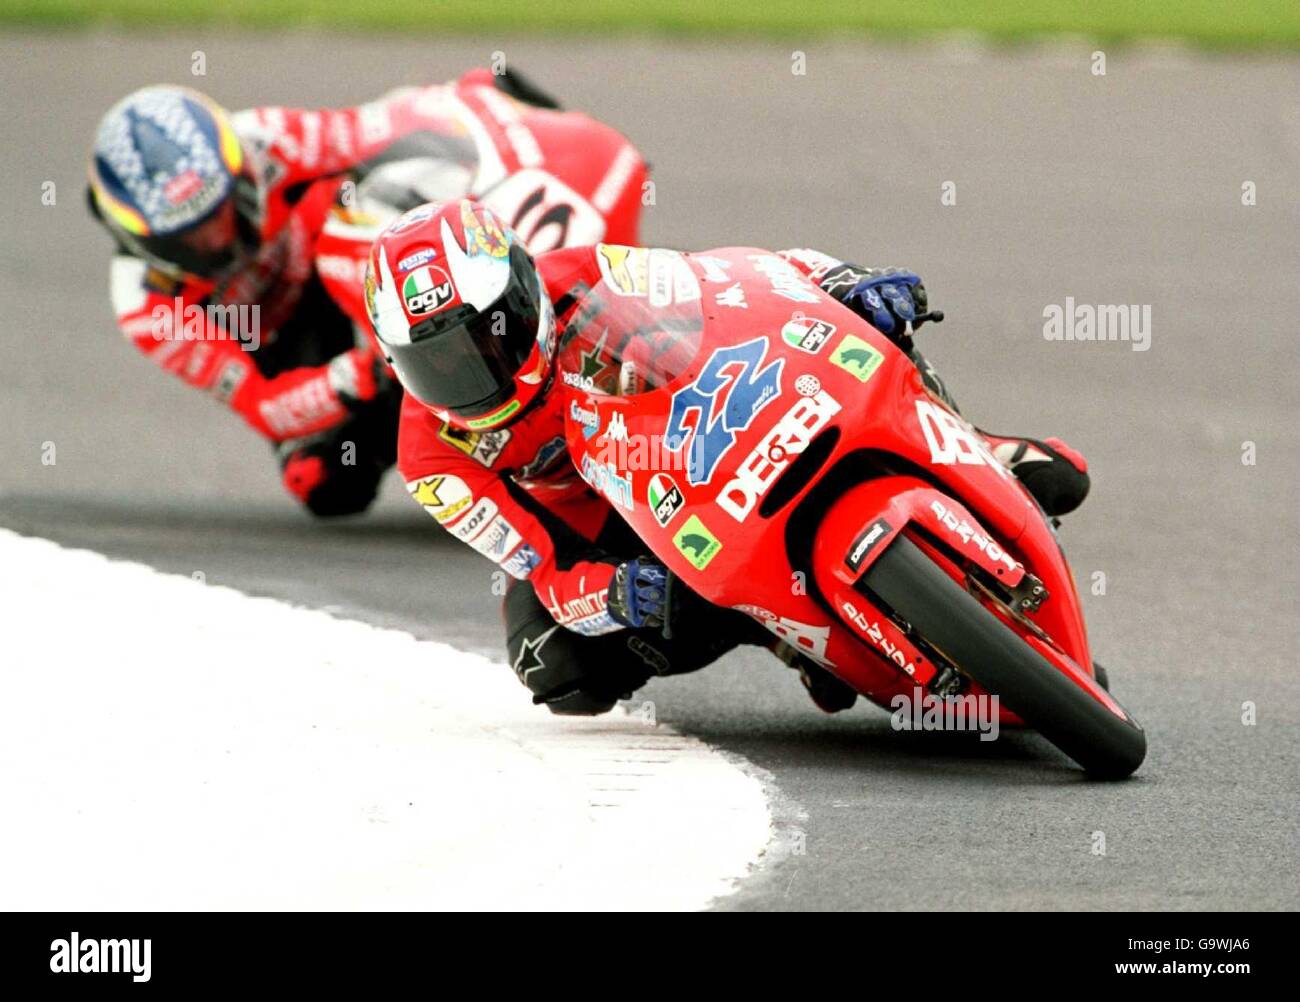 Motociclismo - Campeonato Mundial 125cc - Gran Premio Británico - Parque Donington. Pablo Nieto, Derbi Racing Foto de stock